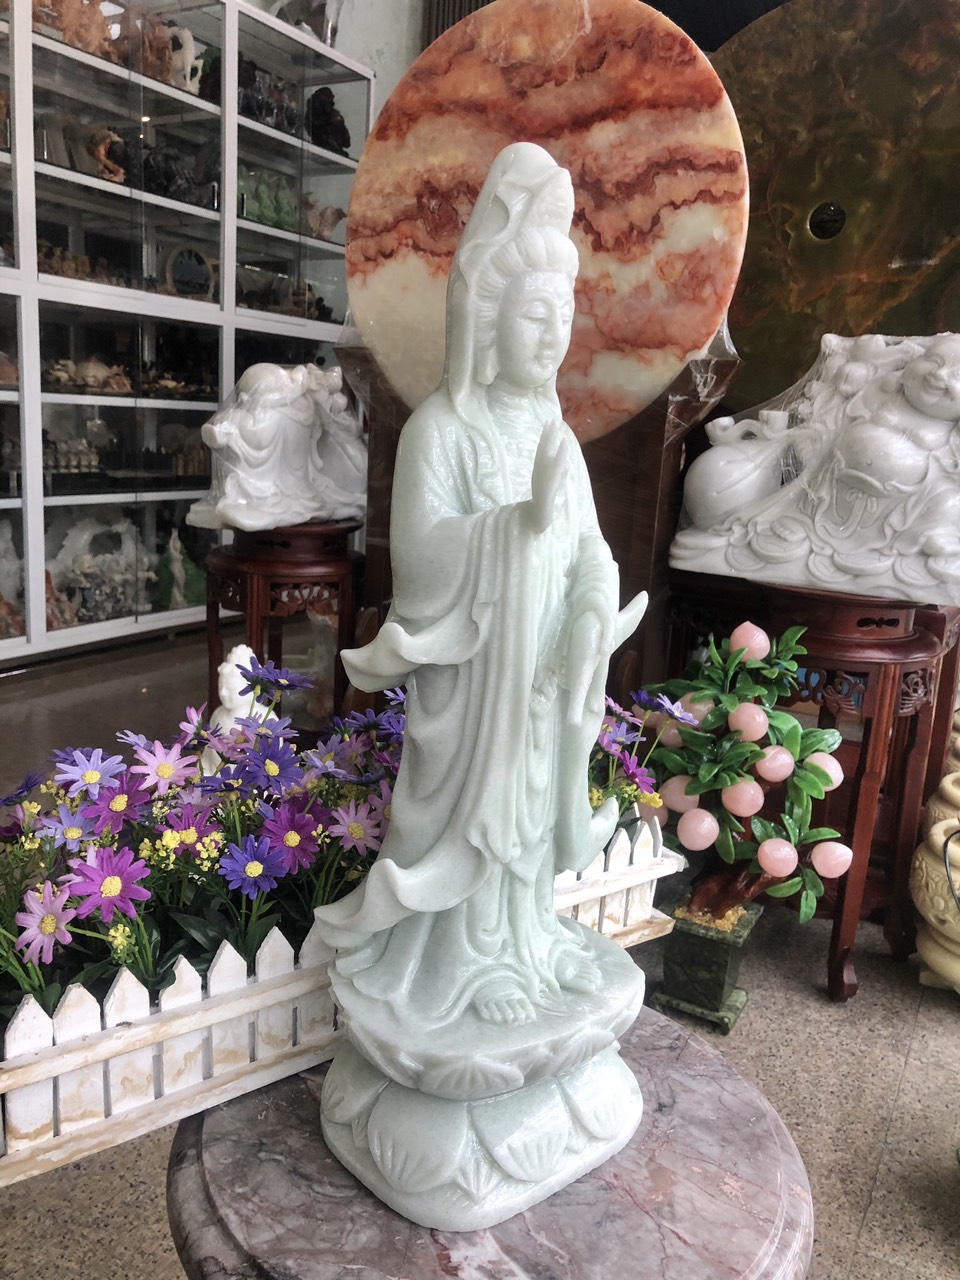 Tượng Phật Bà Quan Thế Âm Bồ Tát đứng đài sen đá cẩm thạch trắng xanh - Cao 50 cm